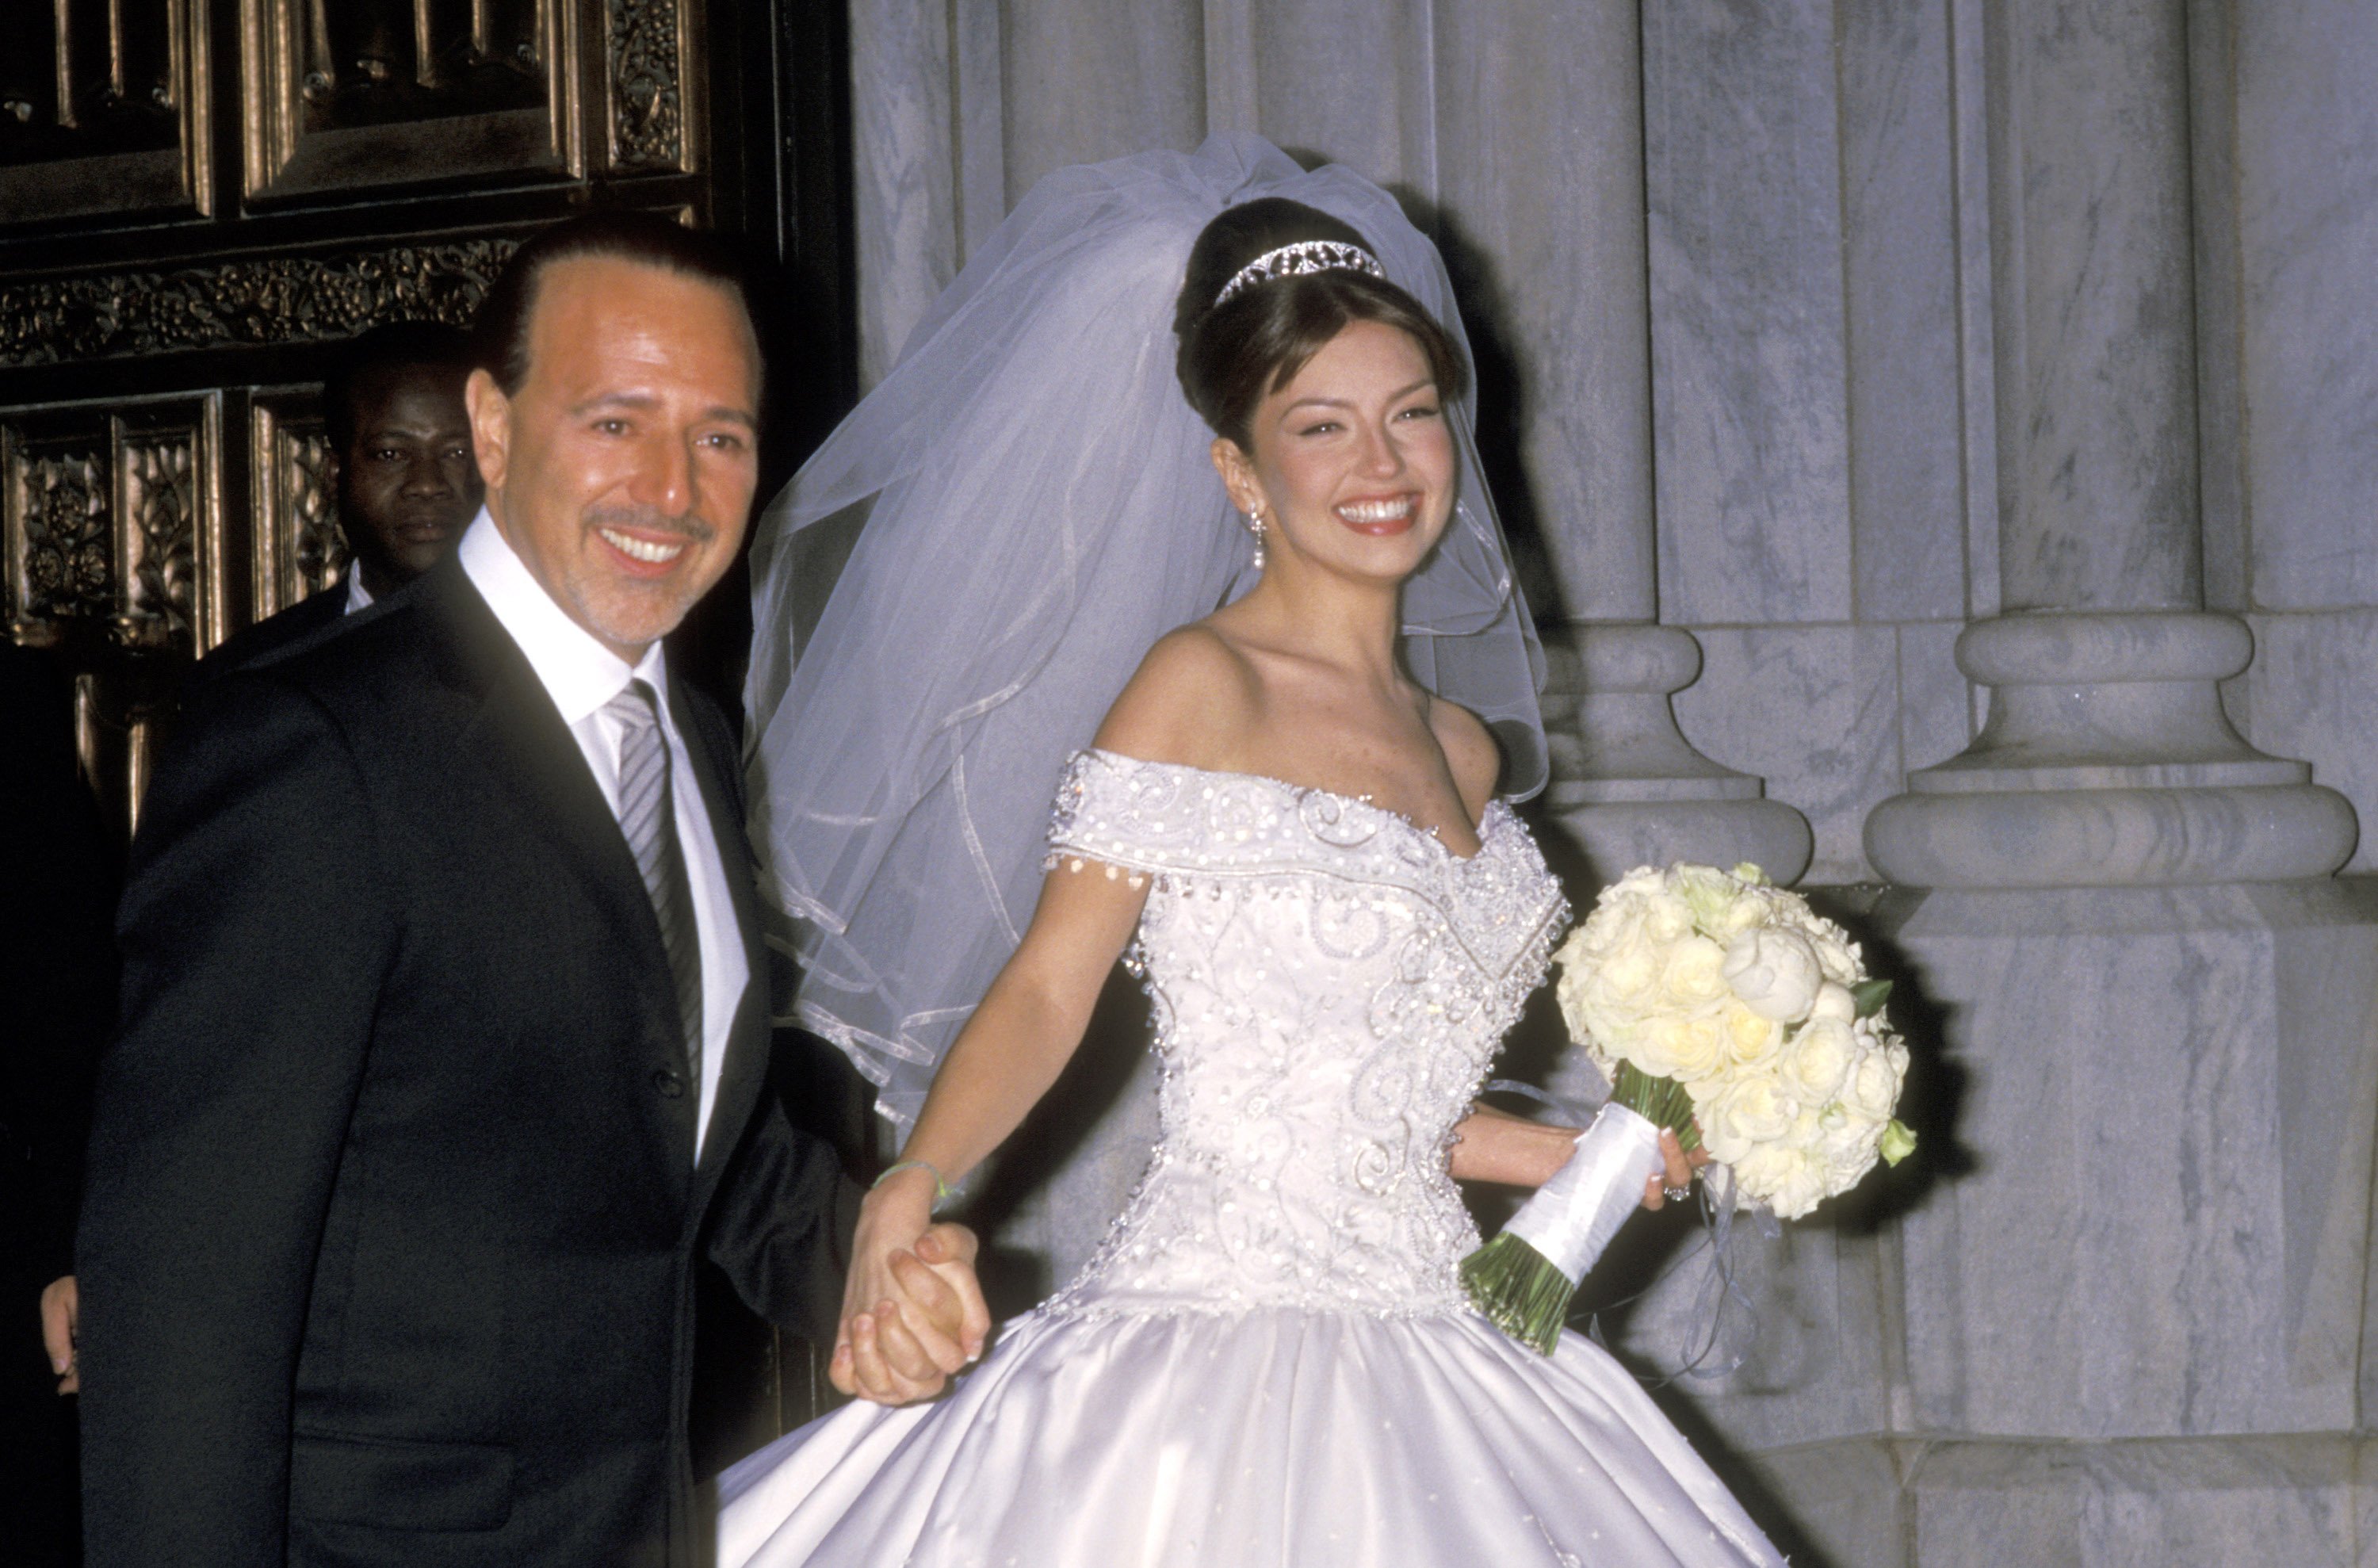 Thalía en su boda con el empresario Tommy Mottola, el 2 de diciembre de 2000 en la catedral de San Patricio en Nueva York. | Foto: Getty Images